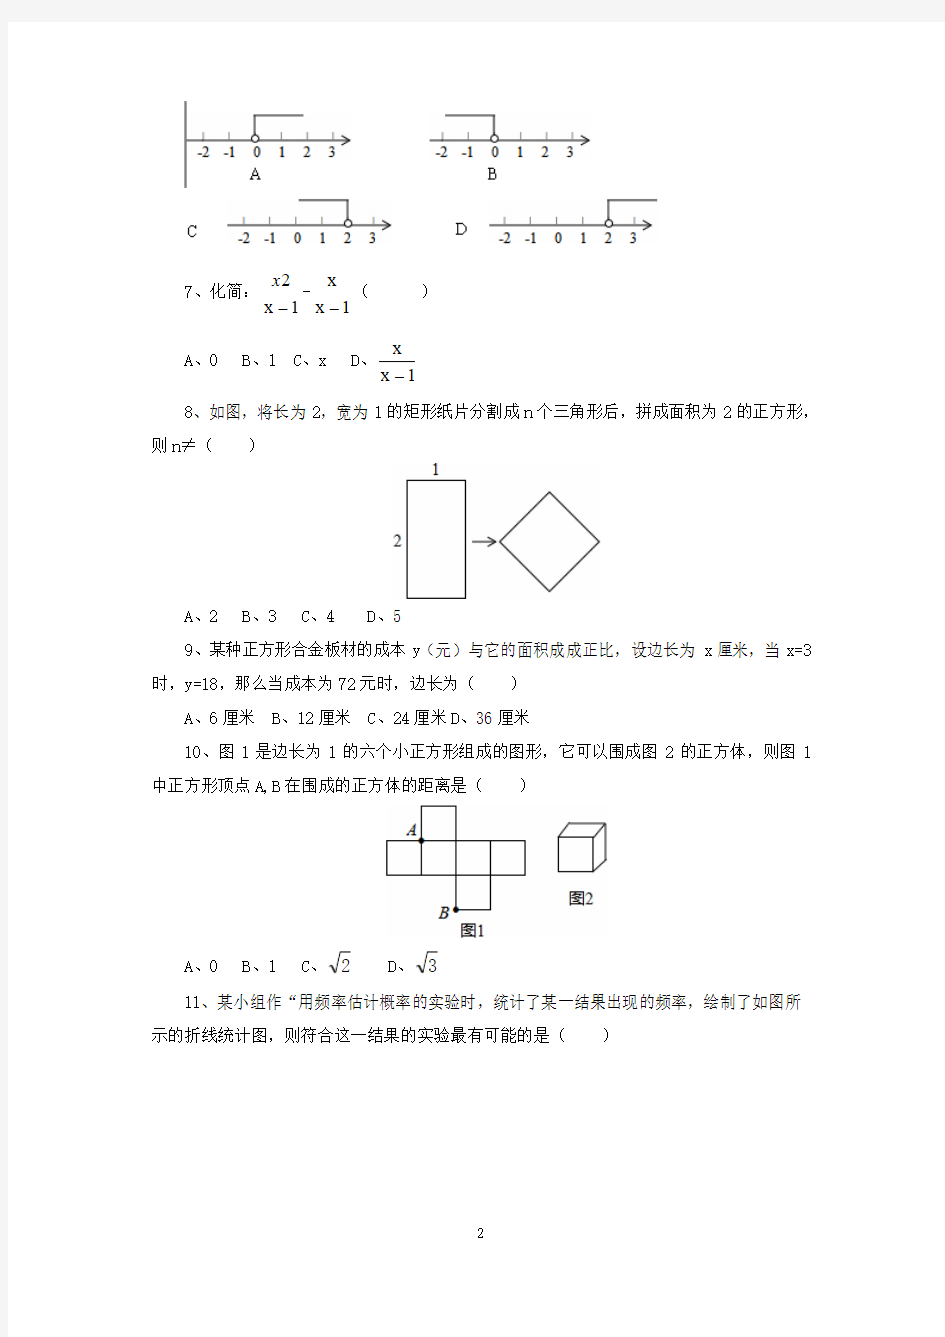 2014年河北省初中毕业生升学文化课考试数学试卷(图片答案)